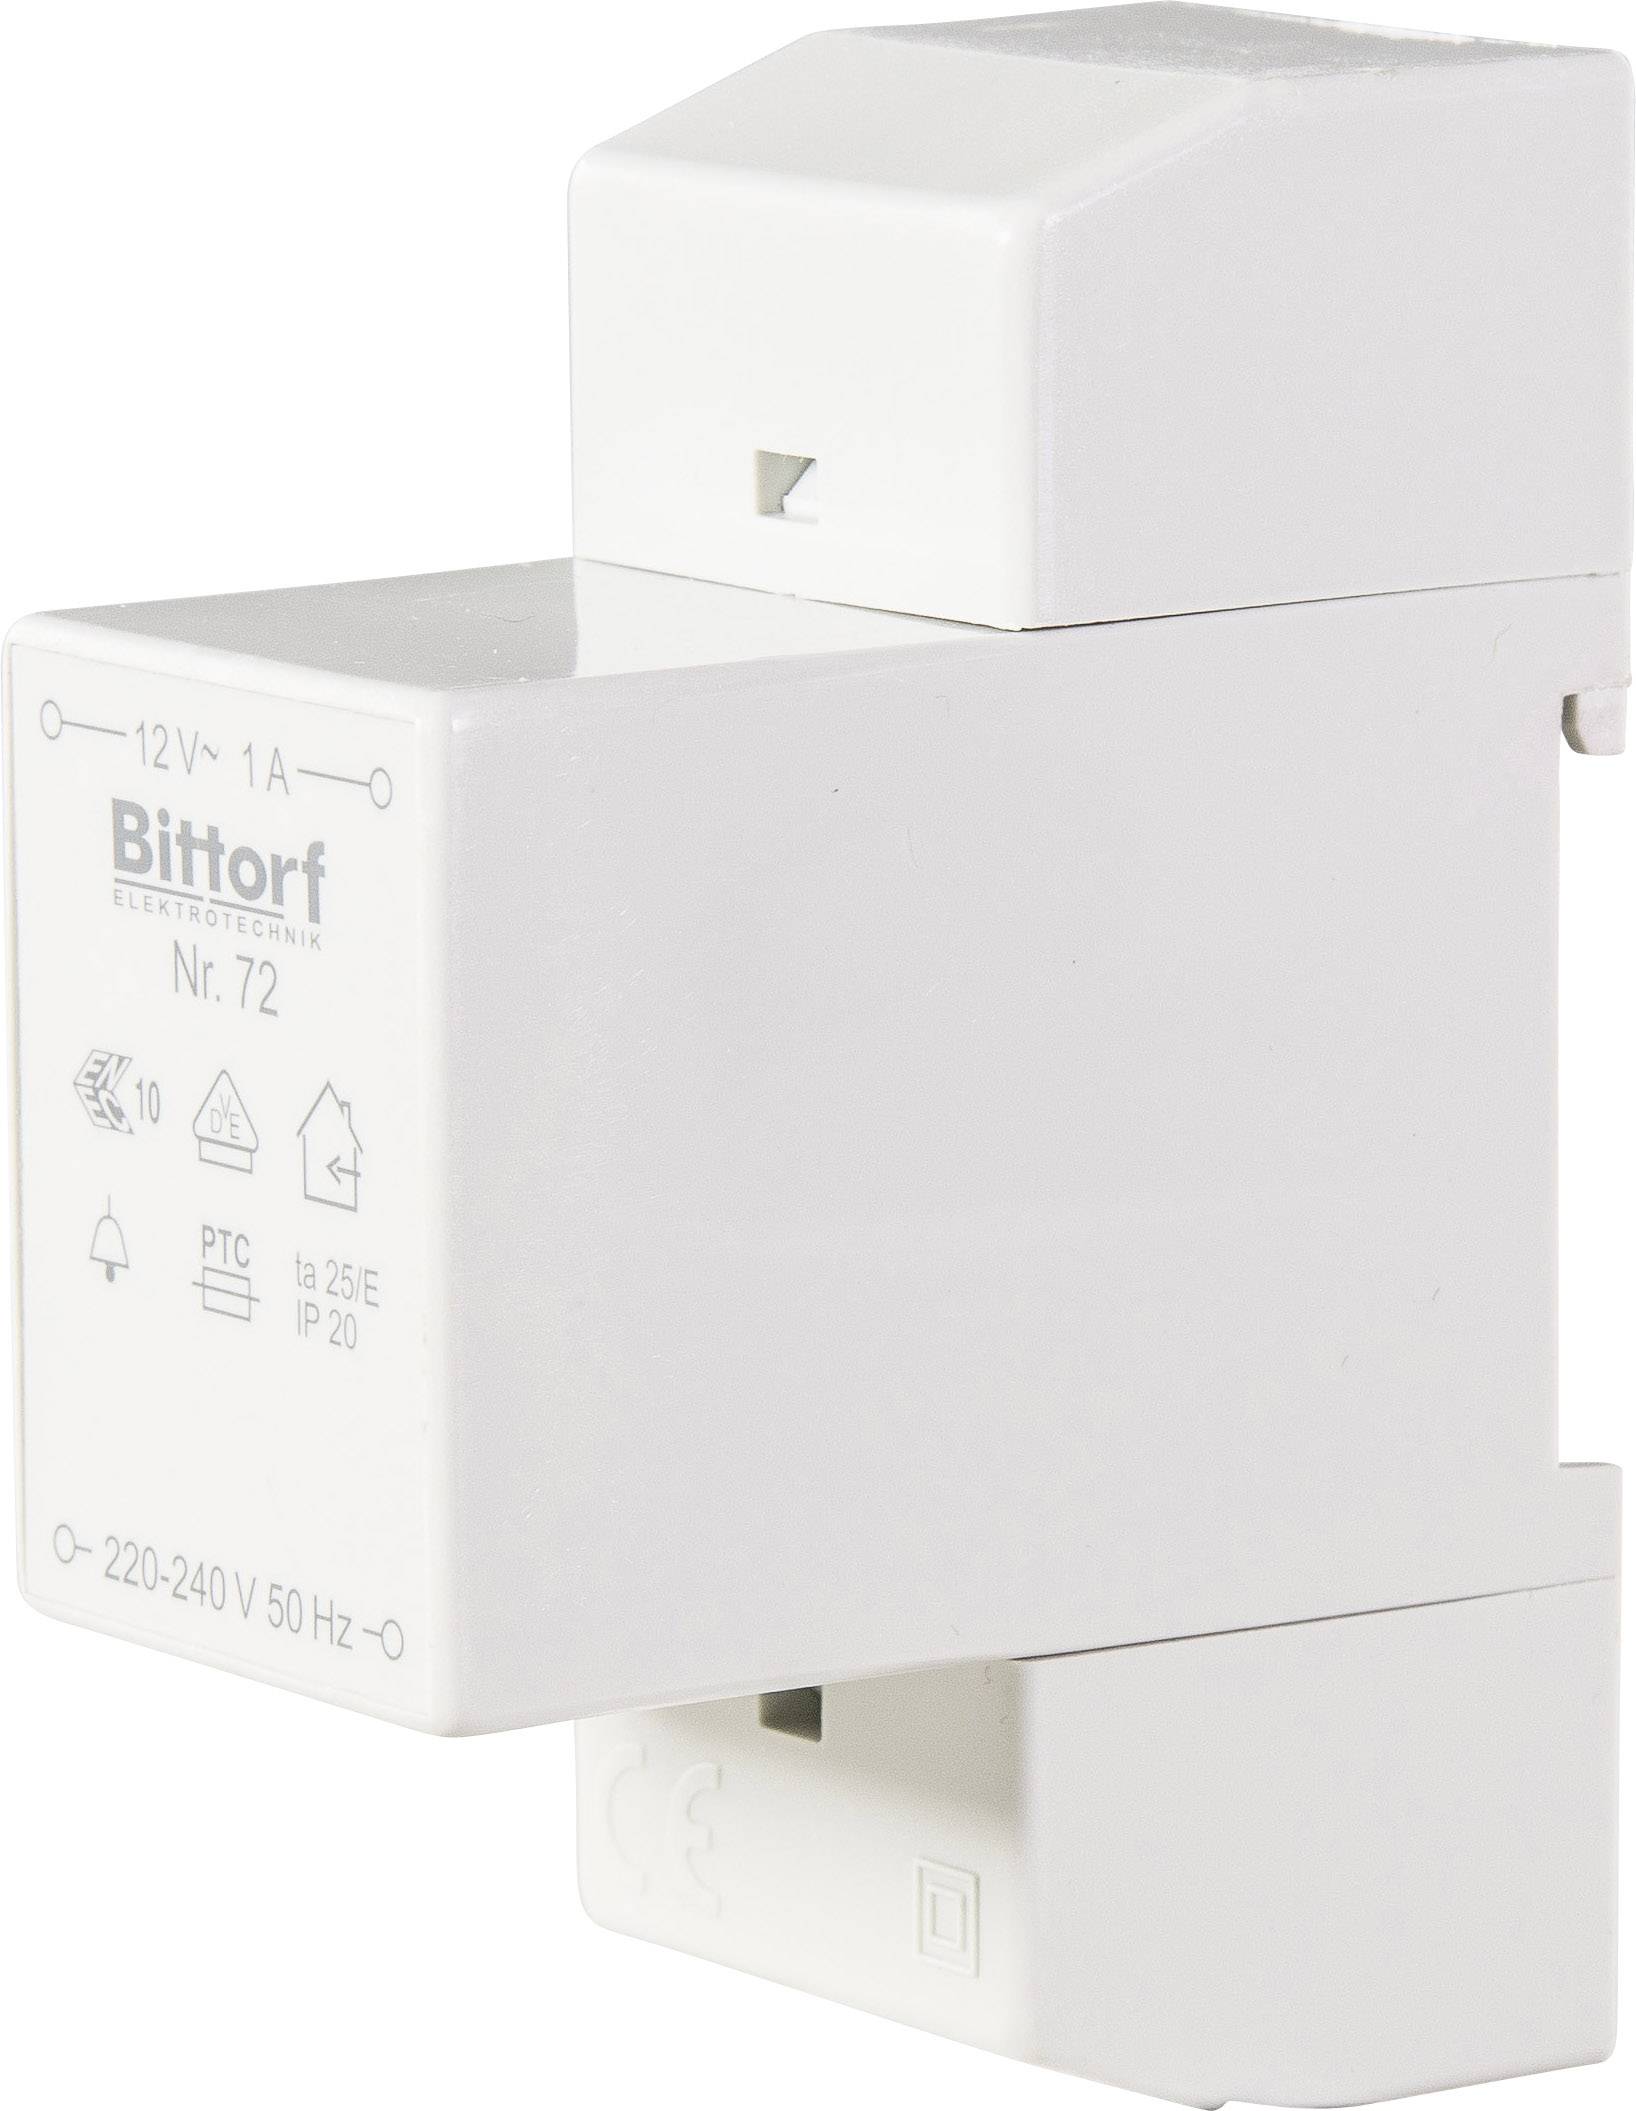 Bittorf 72 Klingel-Transformator 12 V/AC 1 A 